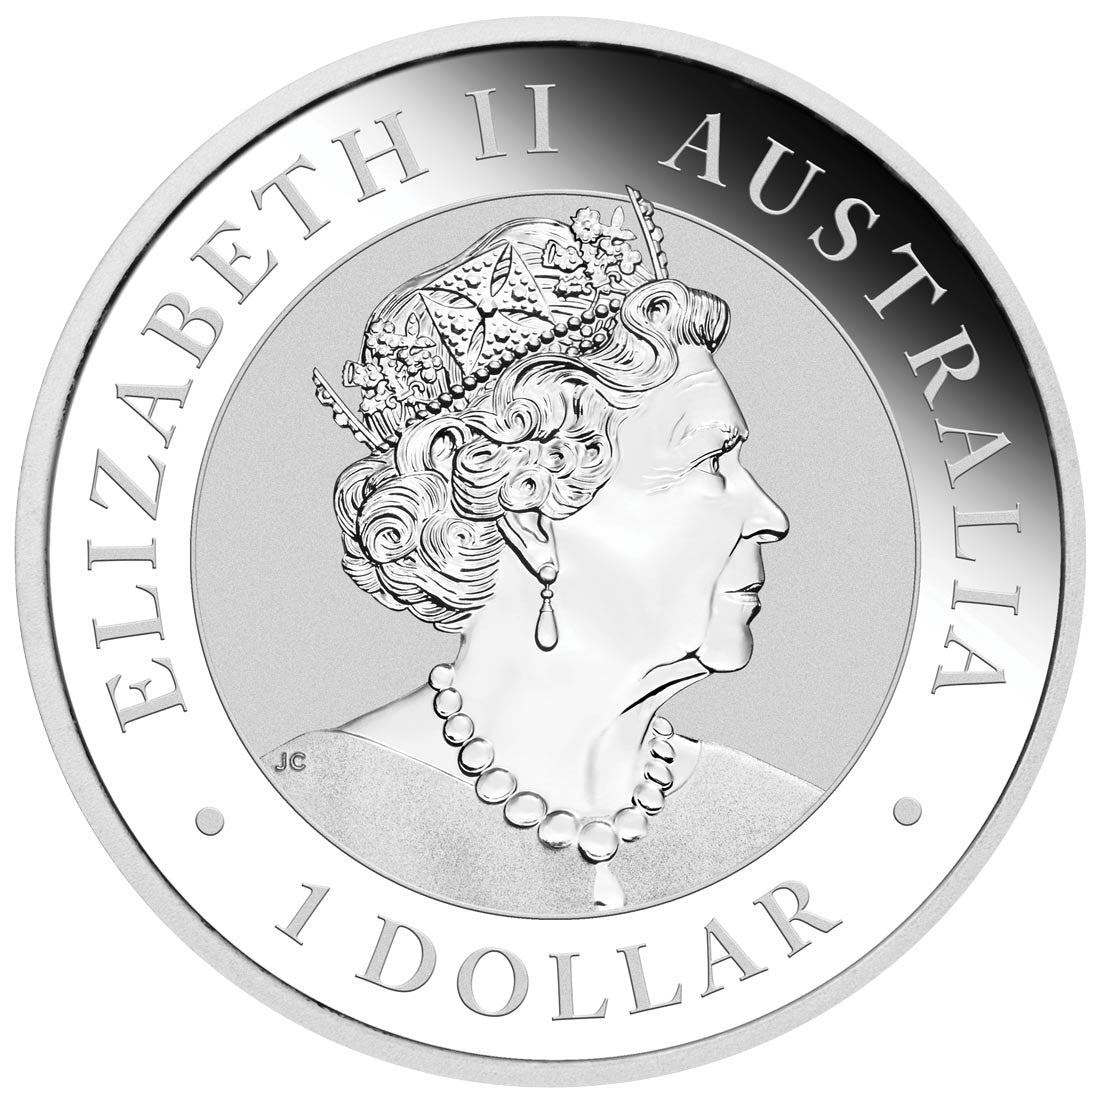 ANDA Sydney Money Expo Kookaburra 2022 1oz Silver Coin Platypus Privy